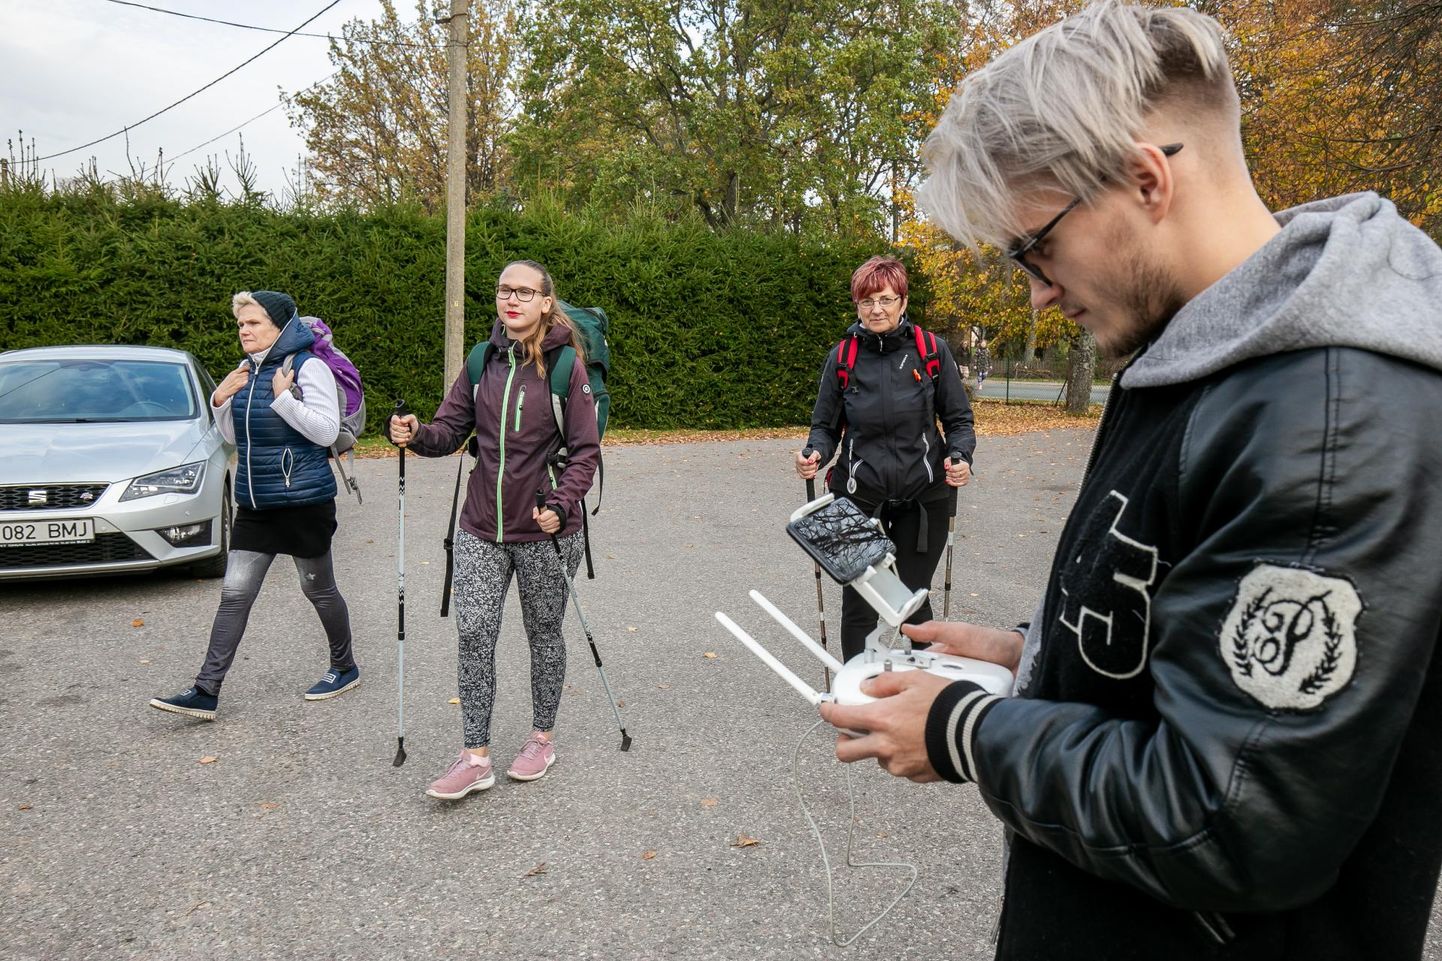 Kabli pagari ees hoidis droonivaatel silma peal matkavideo operaator Hans Markus Antson.